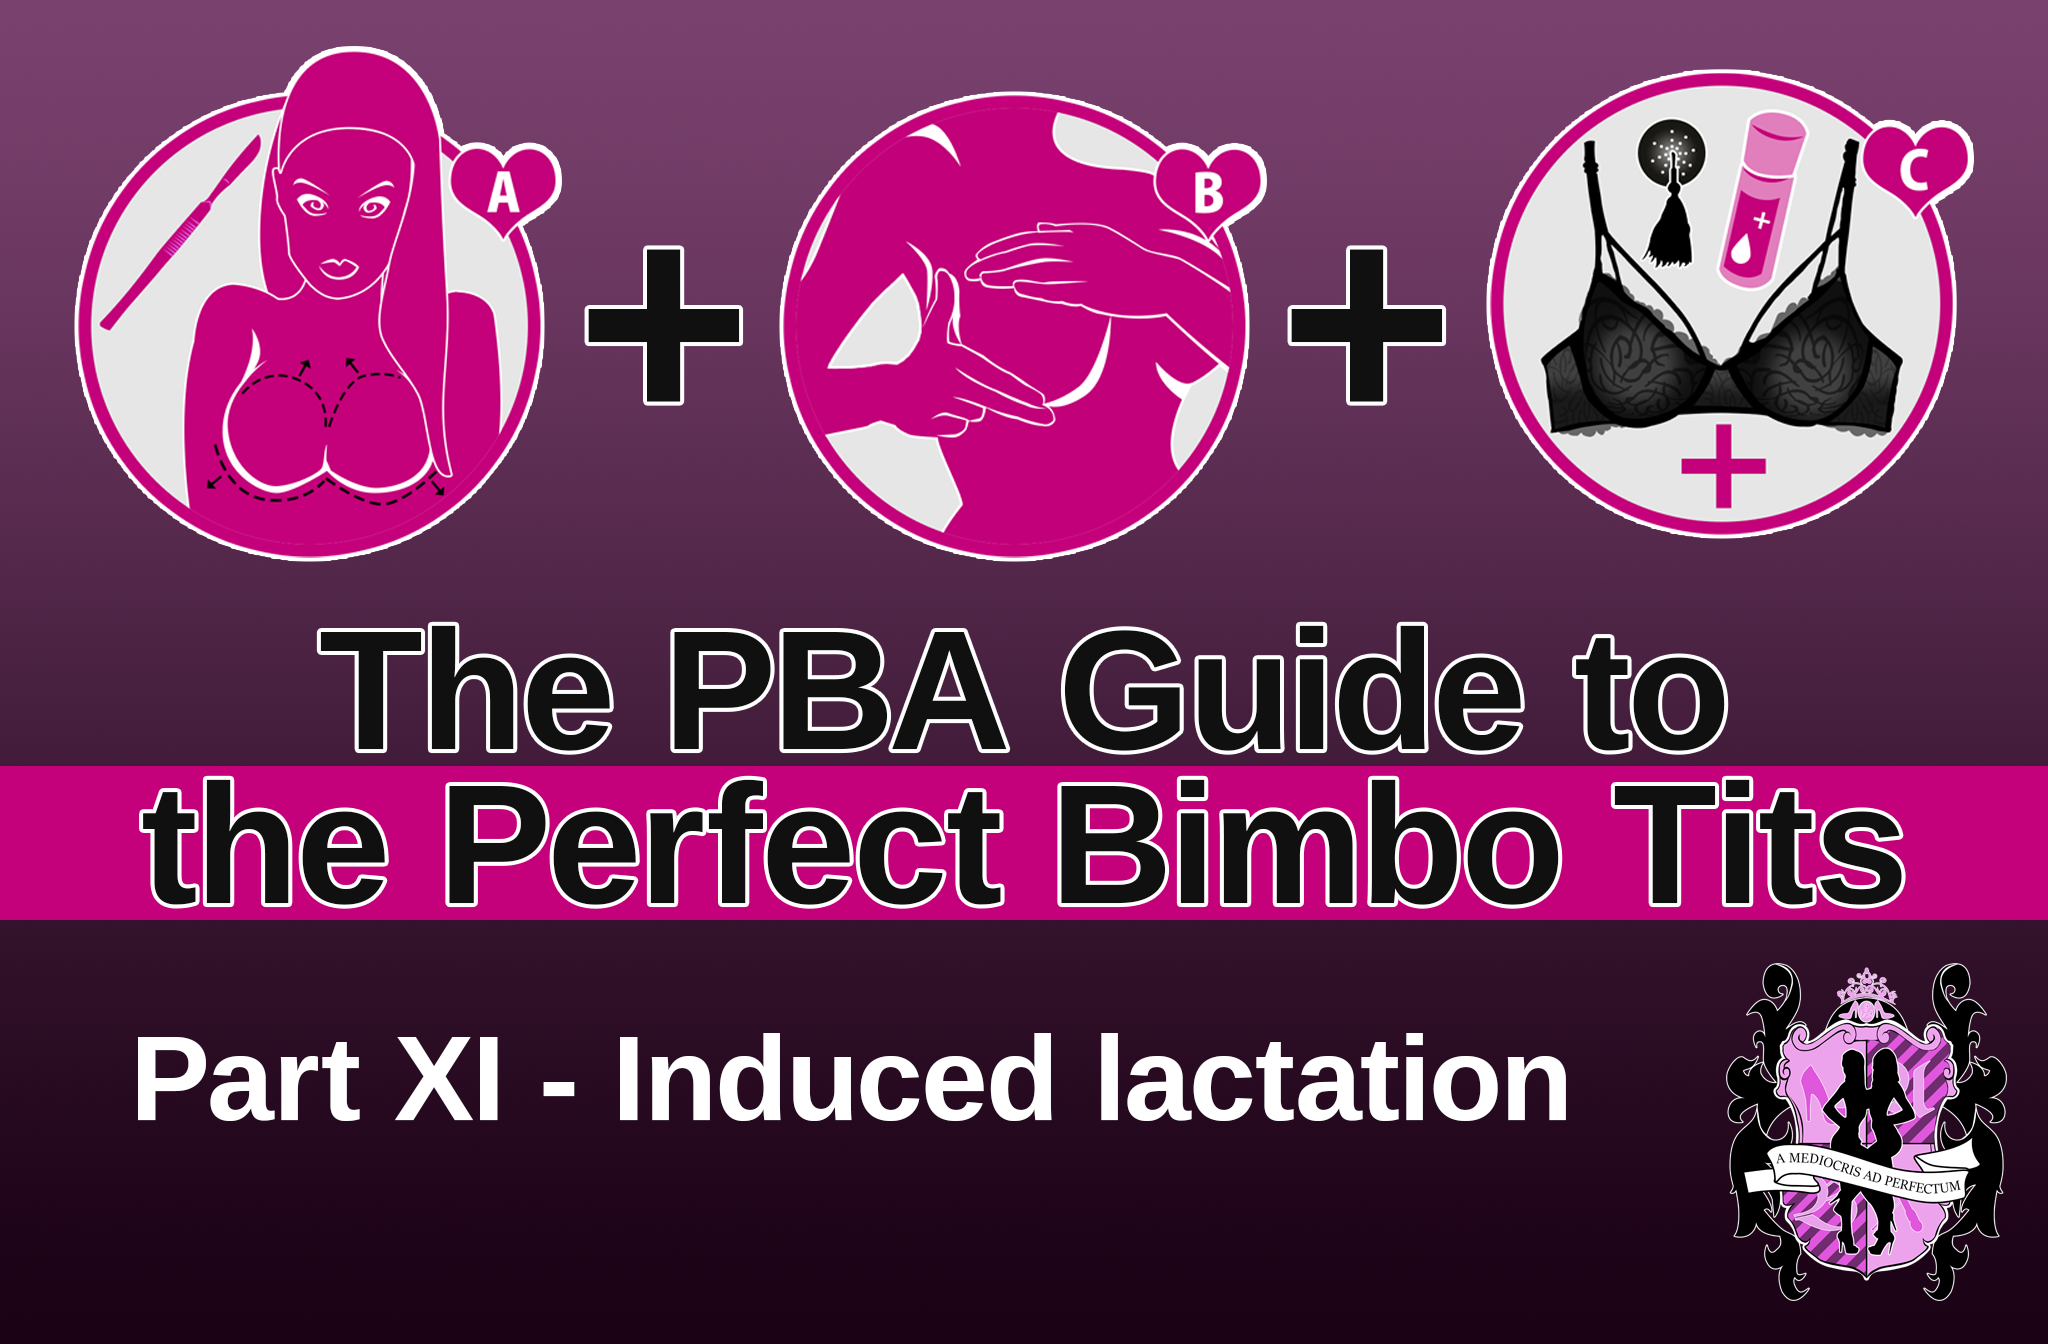 Induced Erotic Lactation - 11. The perfect bimbo tits - Induced lactation - Pink Bimbo Academy